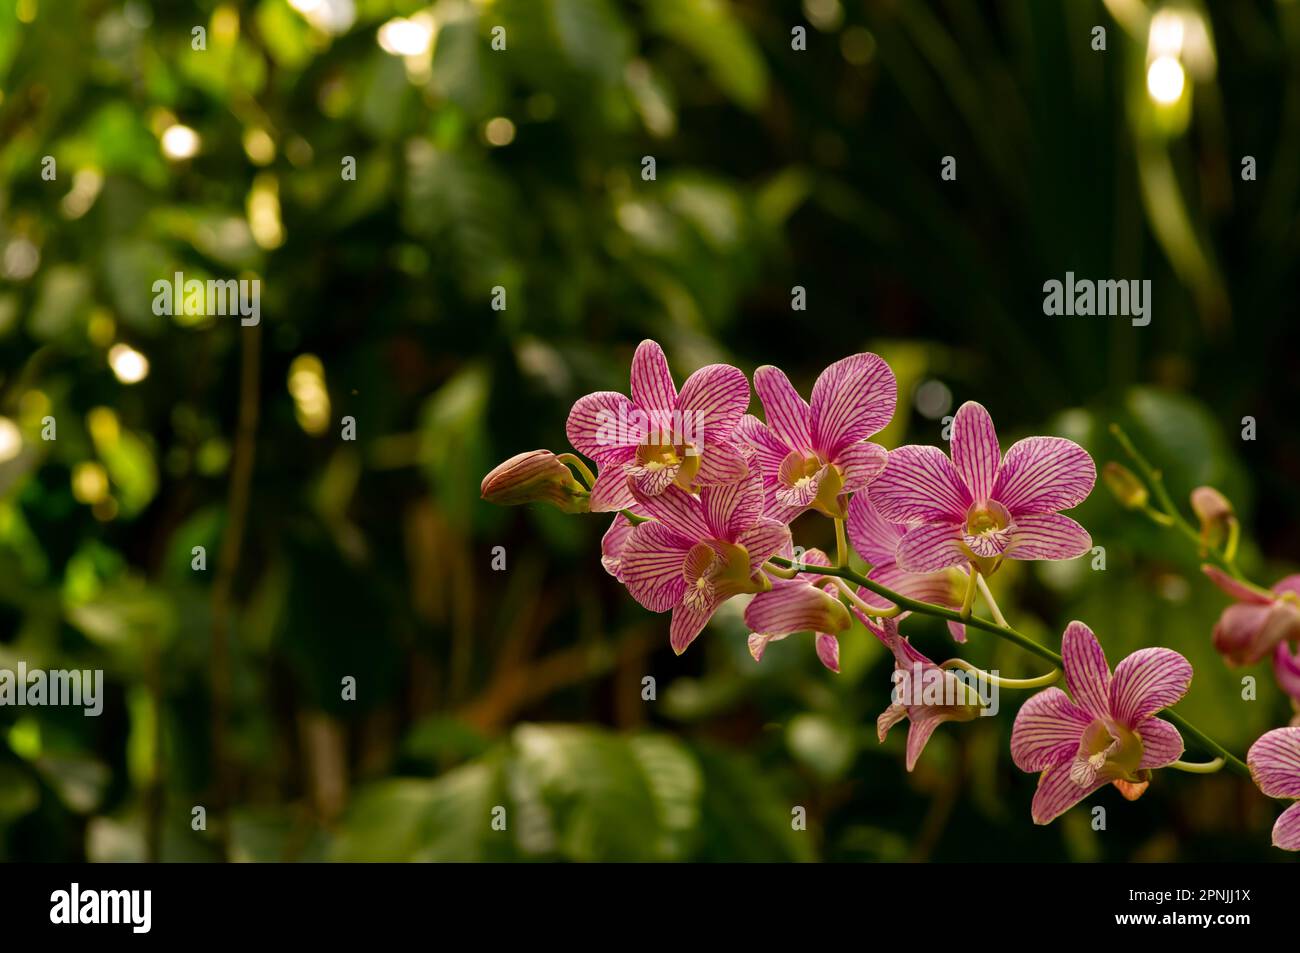 Dendrobium enobi orchid, in shallow focus Stock Photo